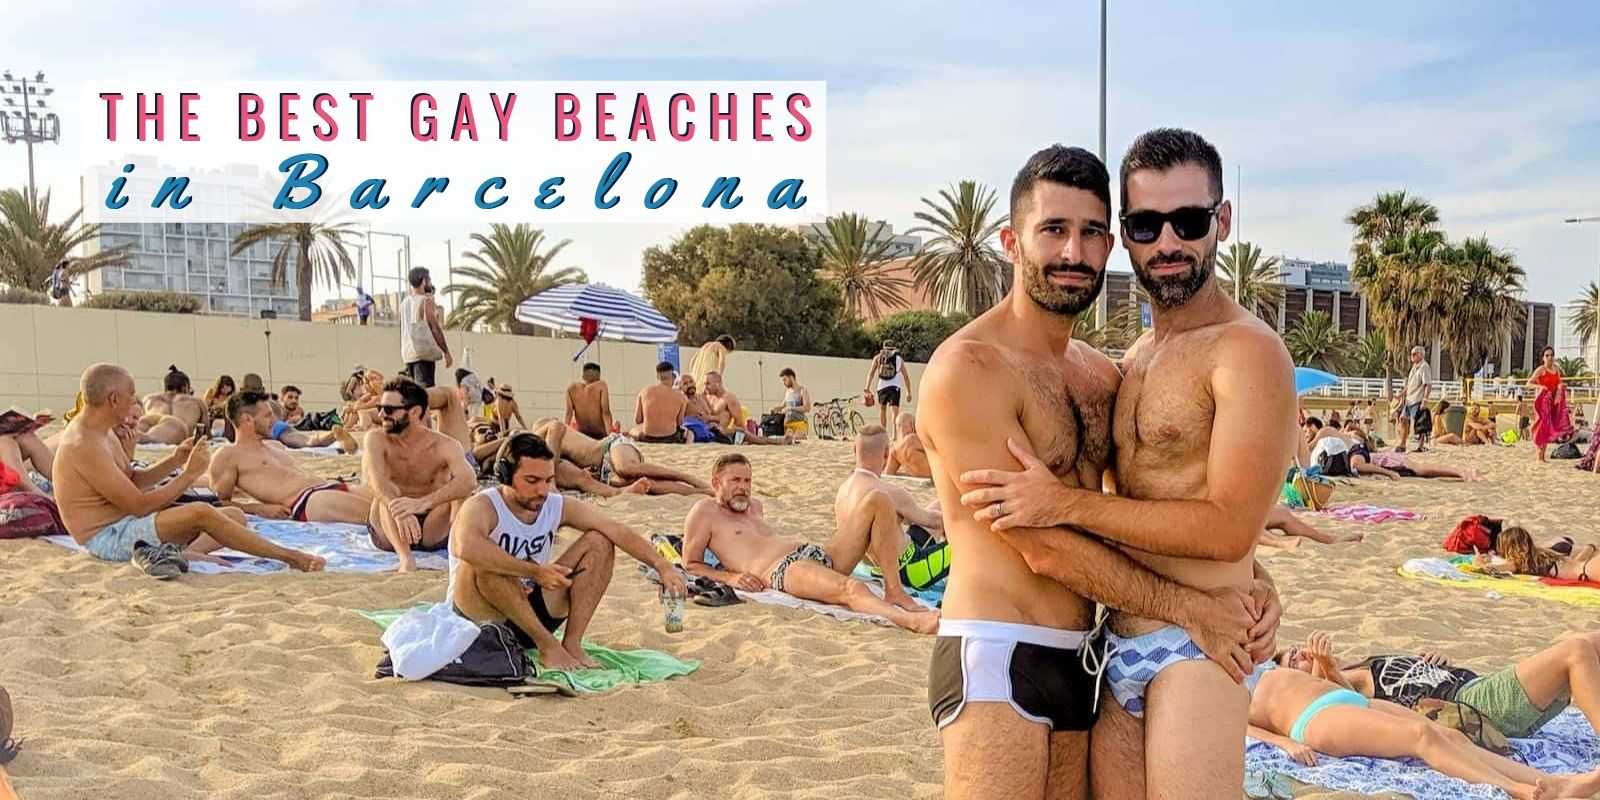 Gay nude beach